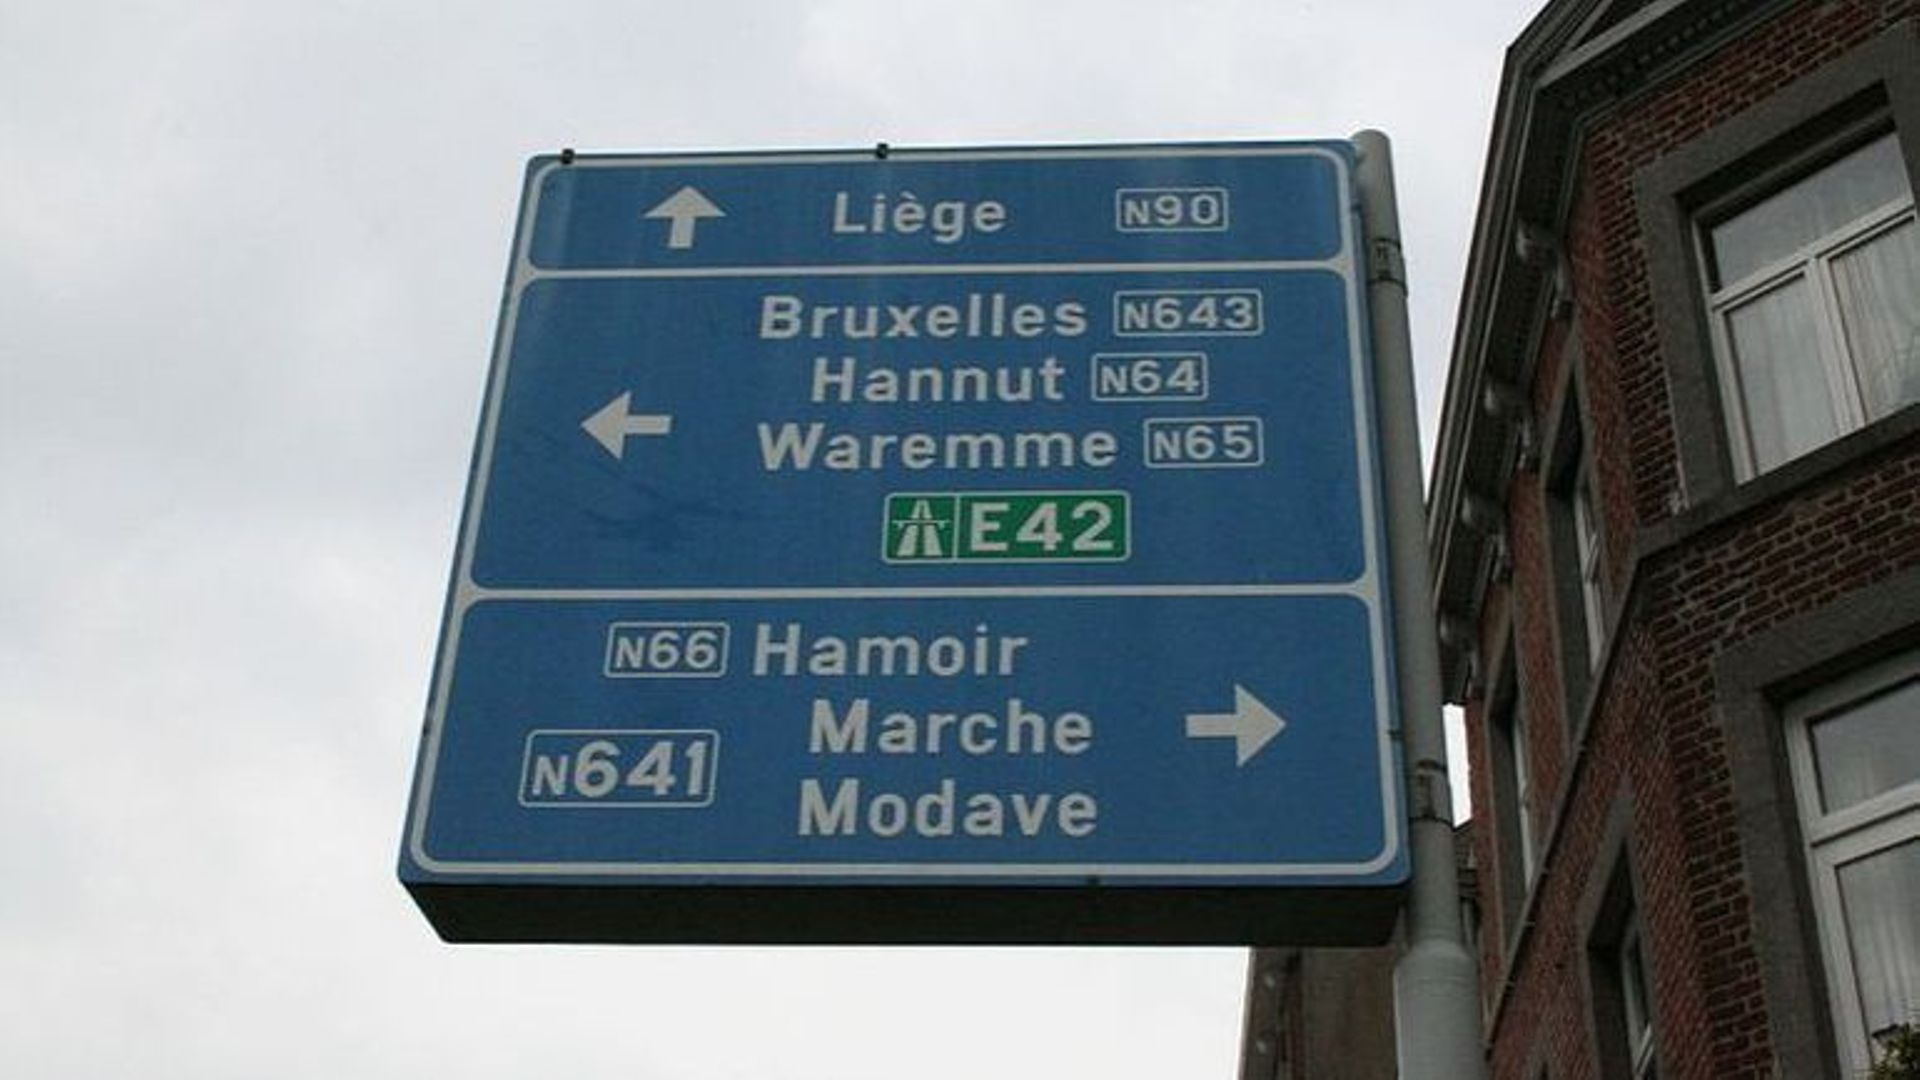 La N90 va de Mons à Liège